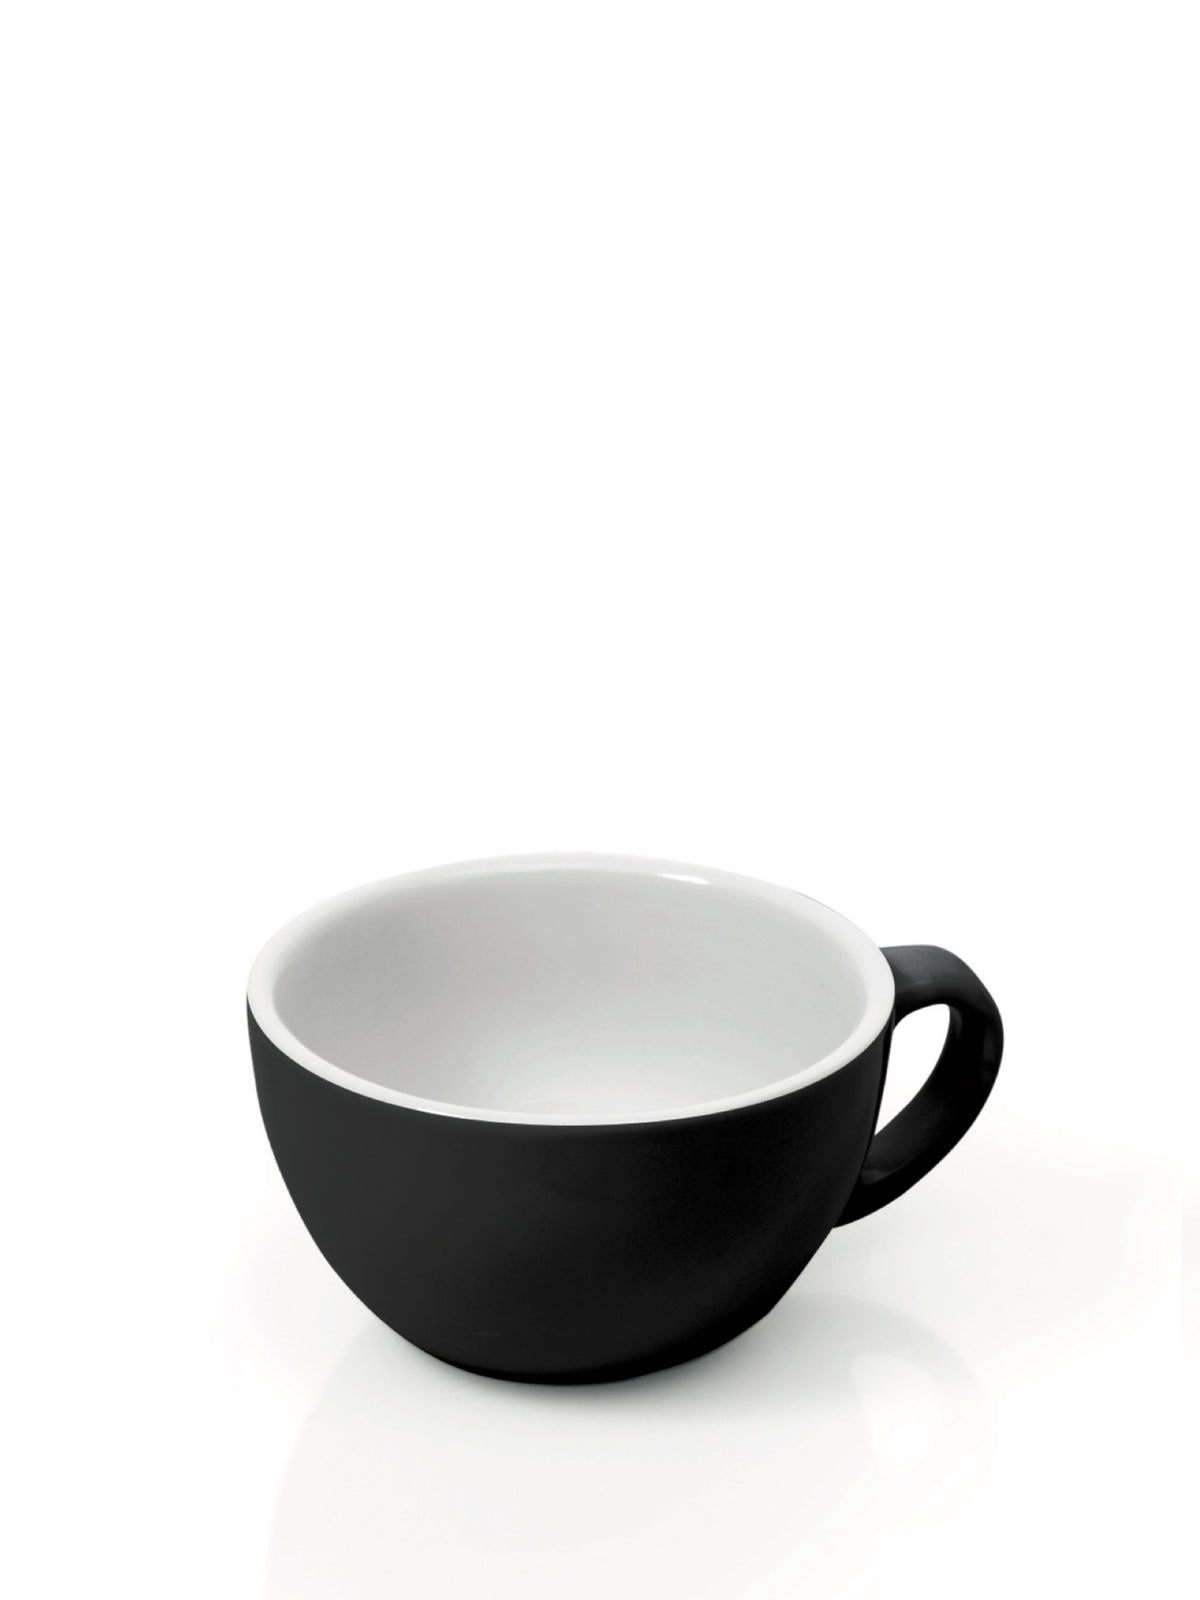 Nyd din cappuccino i disse elegante kopper til kaffeelskere